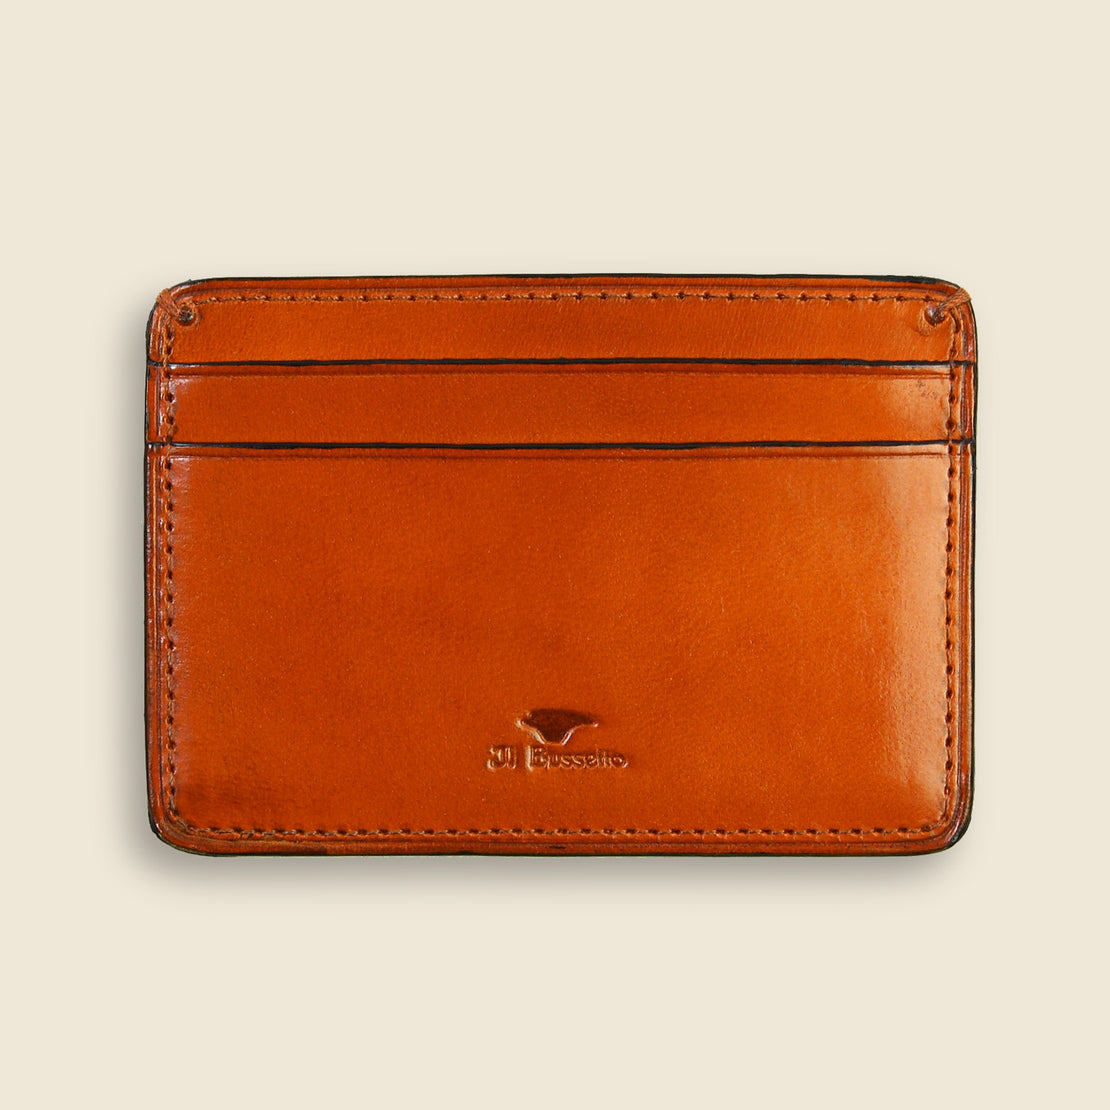 Il Bussetto Credit Card Case - Orange